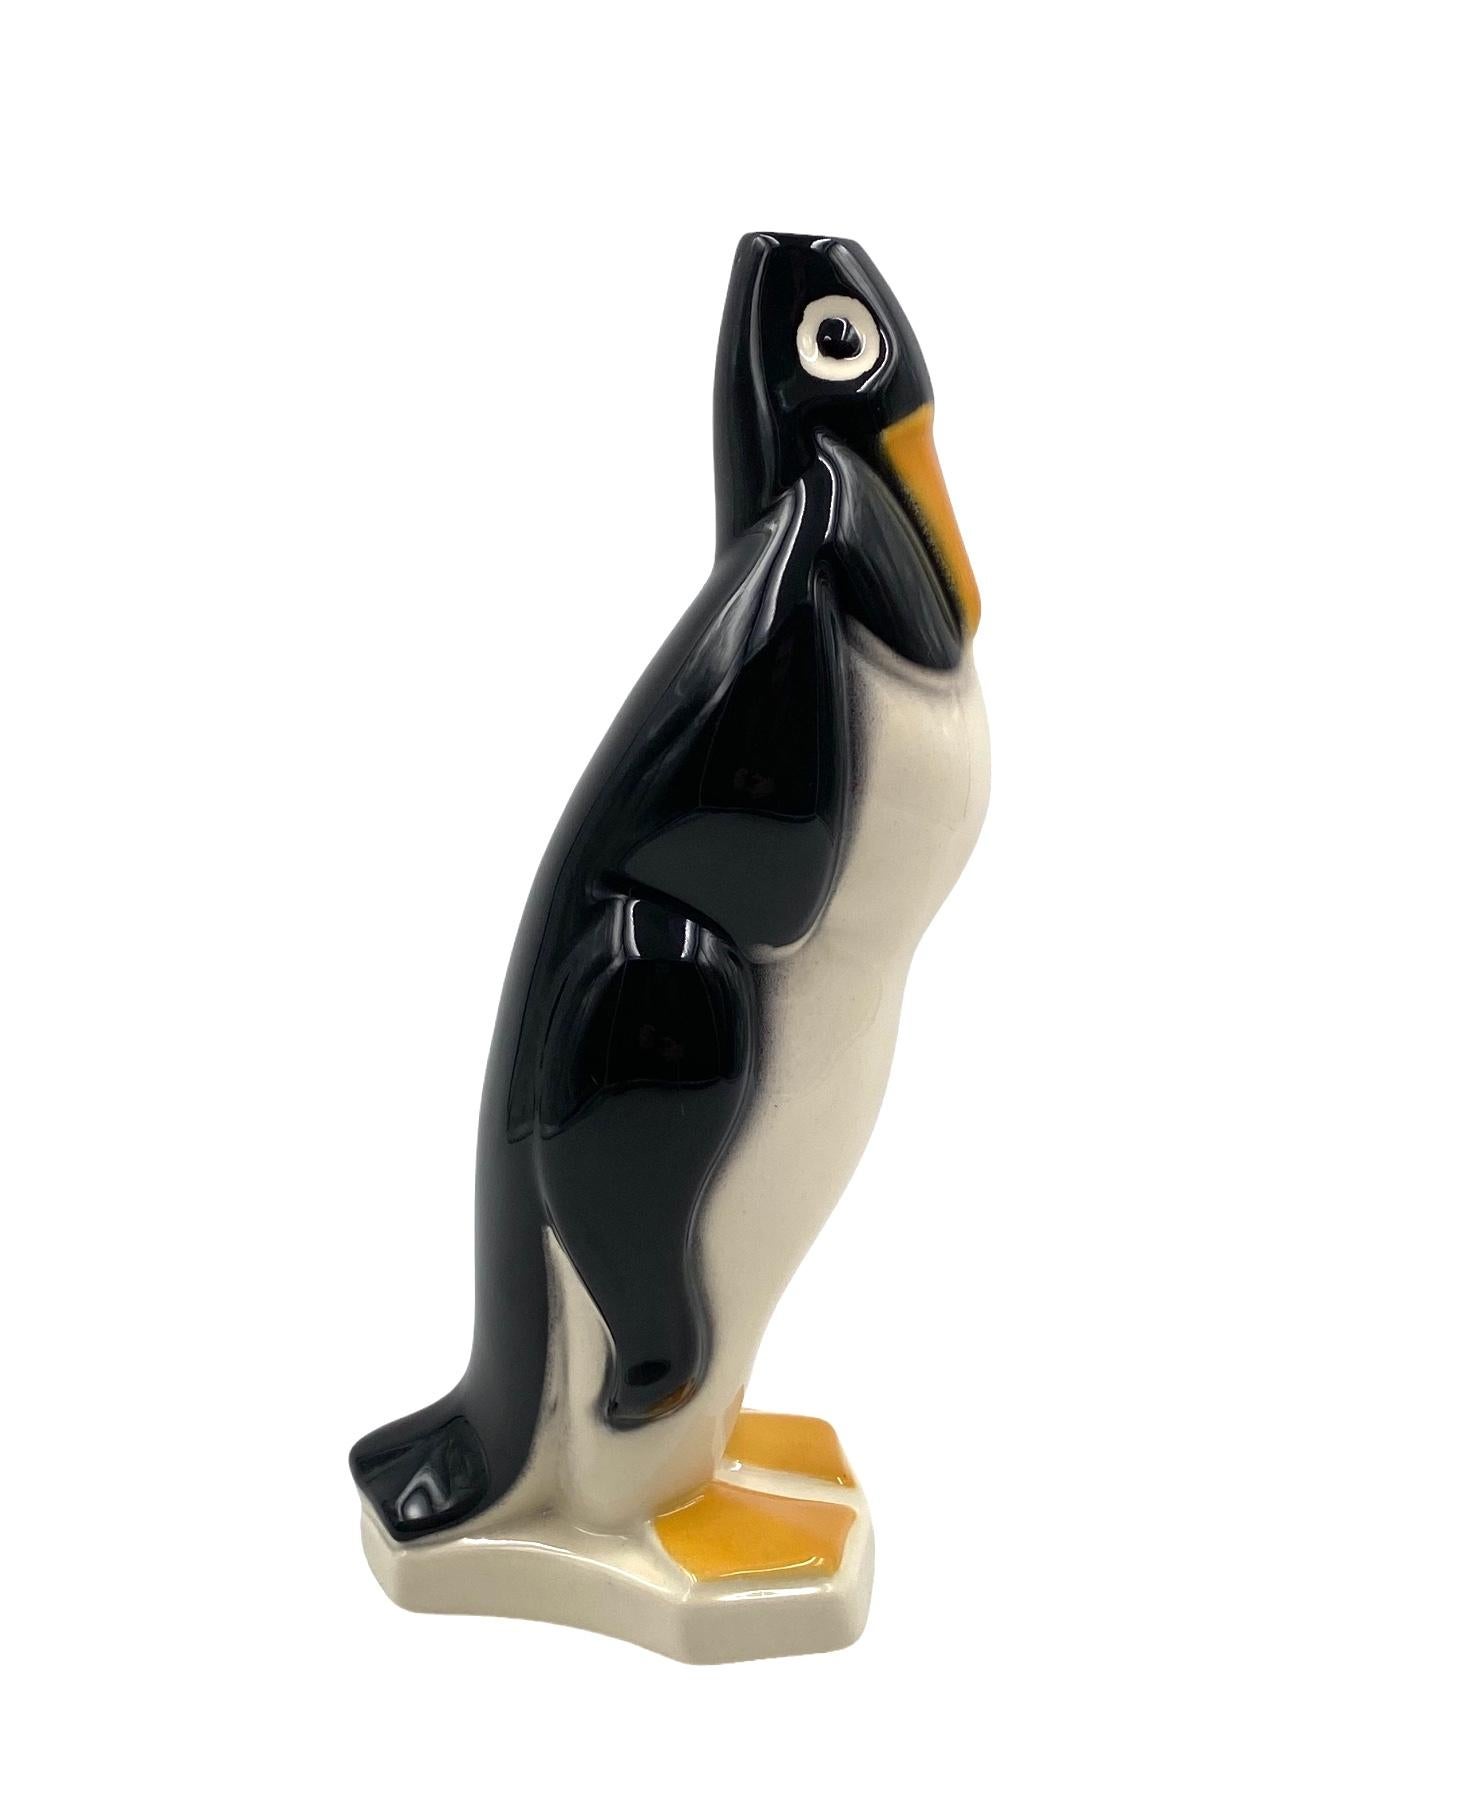 Penguin ceramic solifleur vase, Saint Clement France 1920s For Sale 7